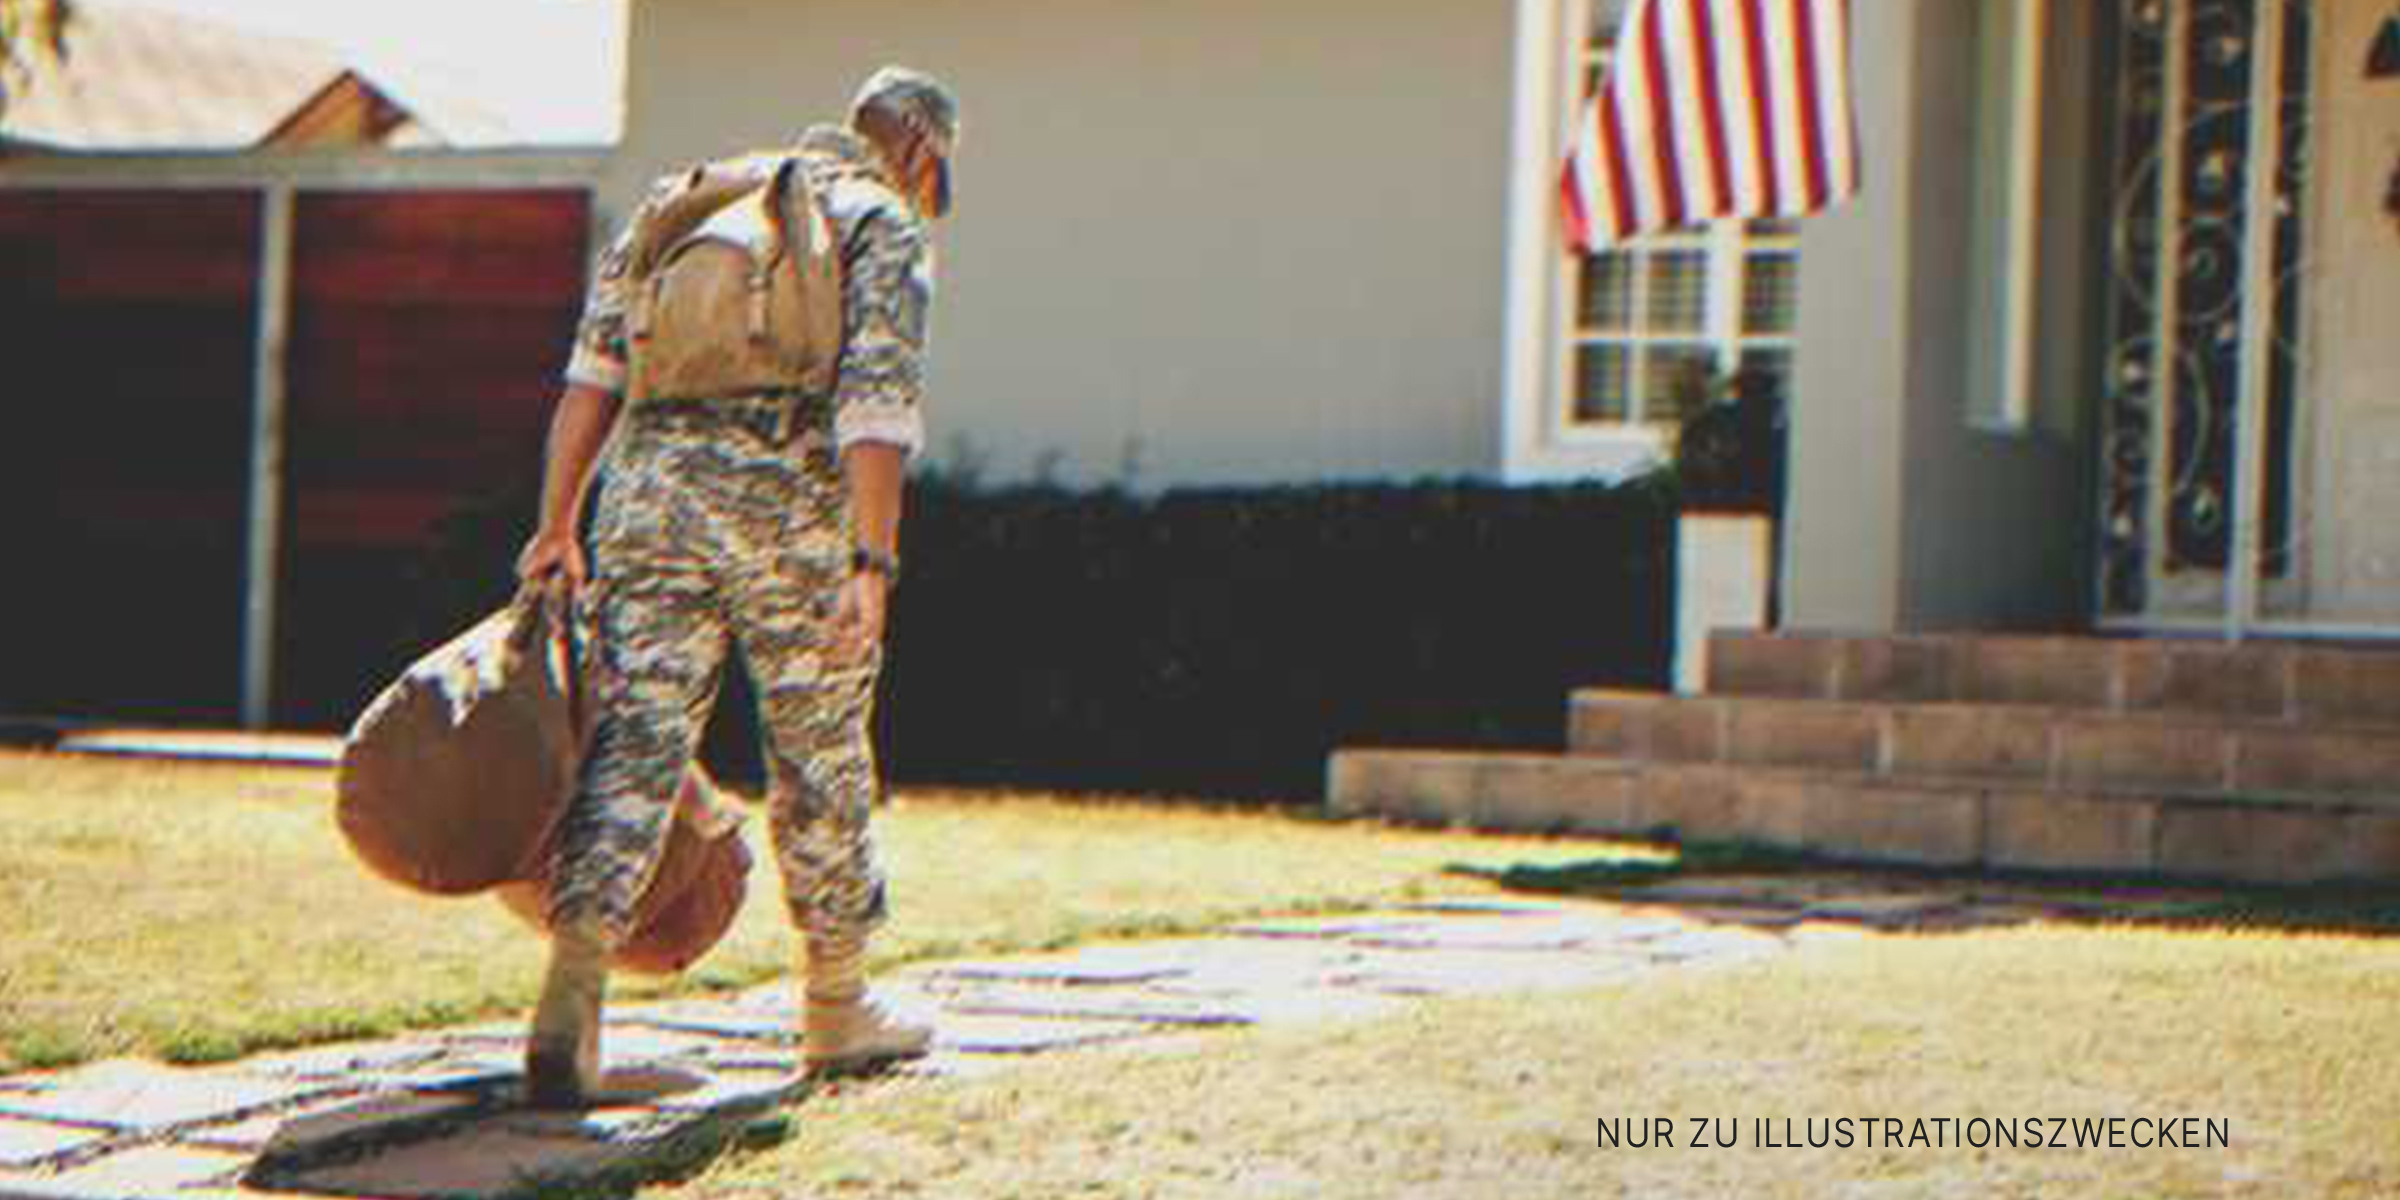 Soldate vor einem Haus | Quelle: Shutterstock.com